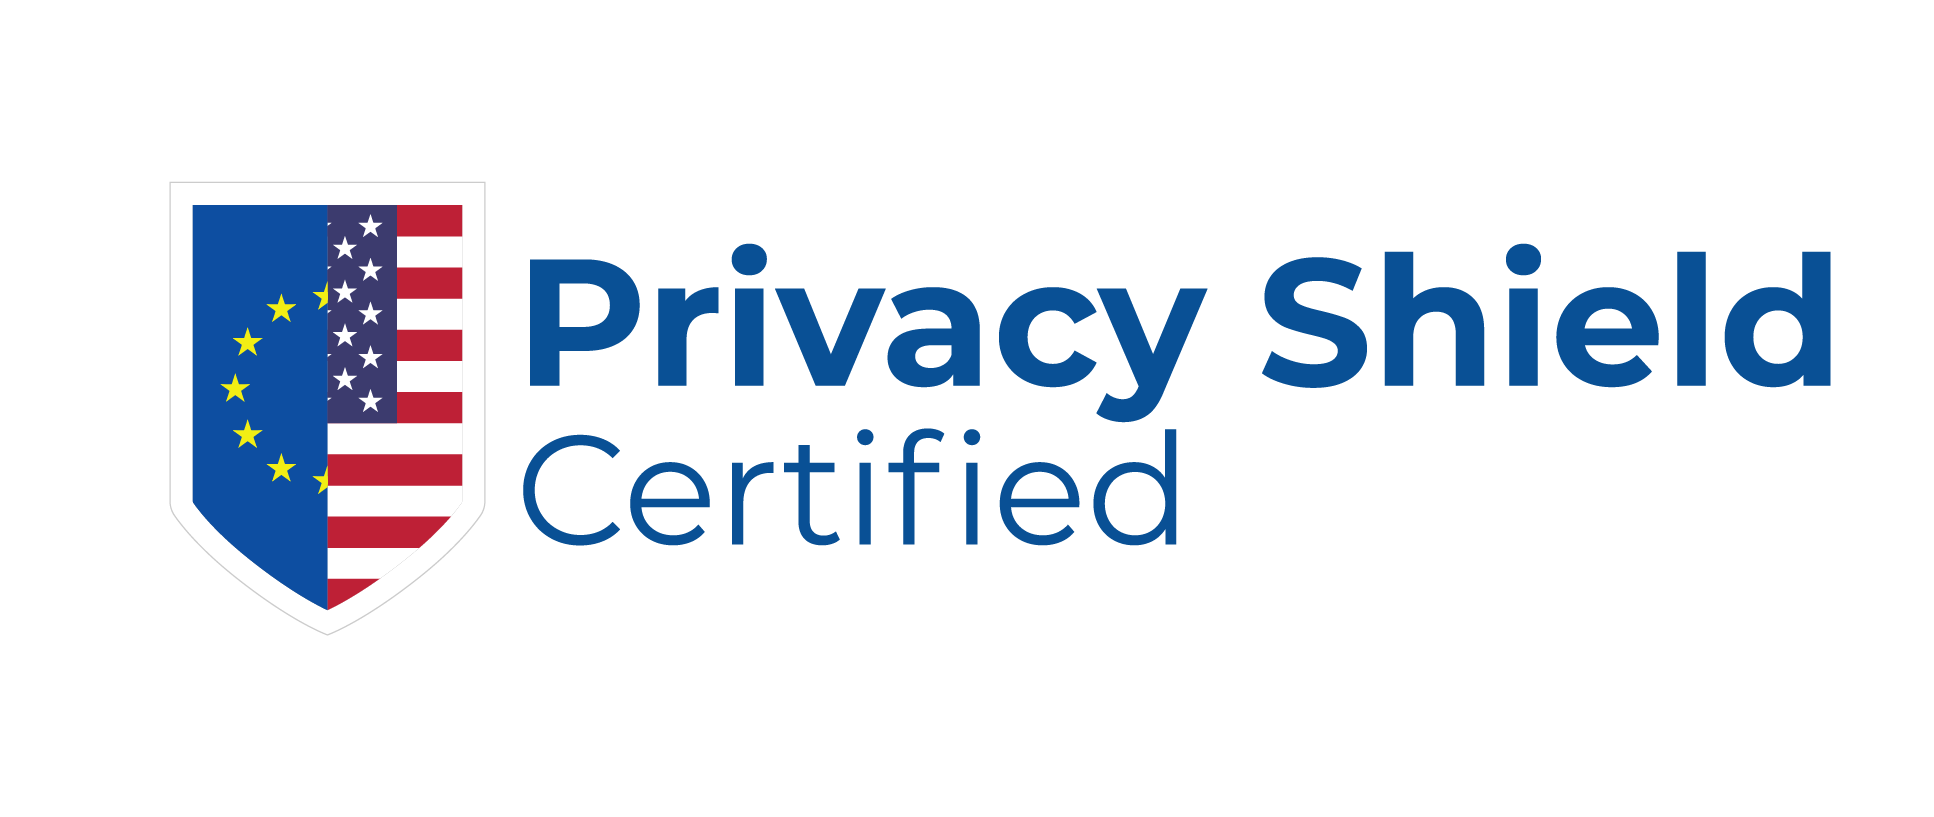 Certificado de Proteção de Privacidade